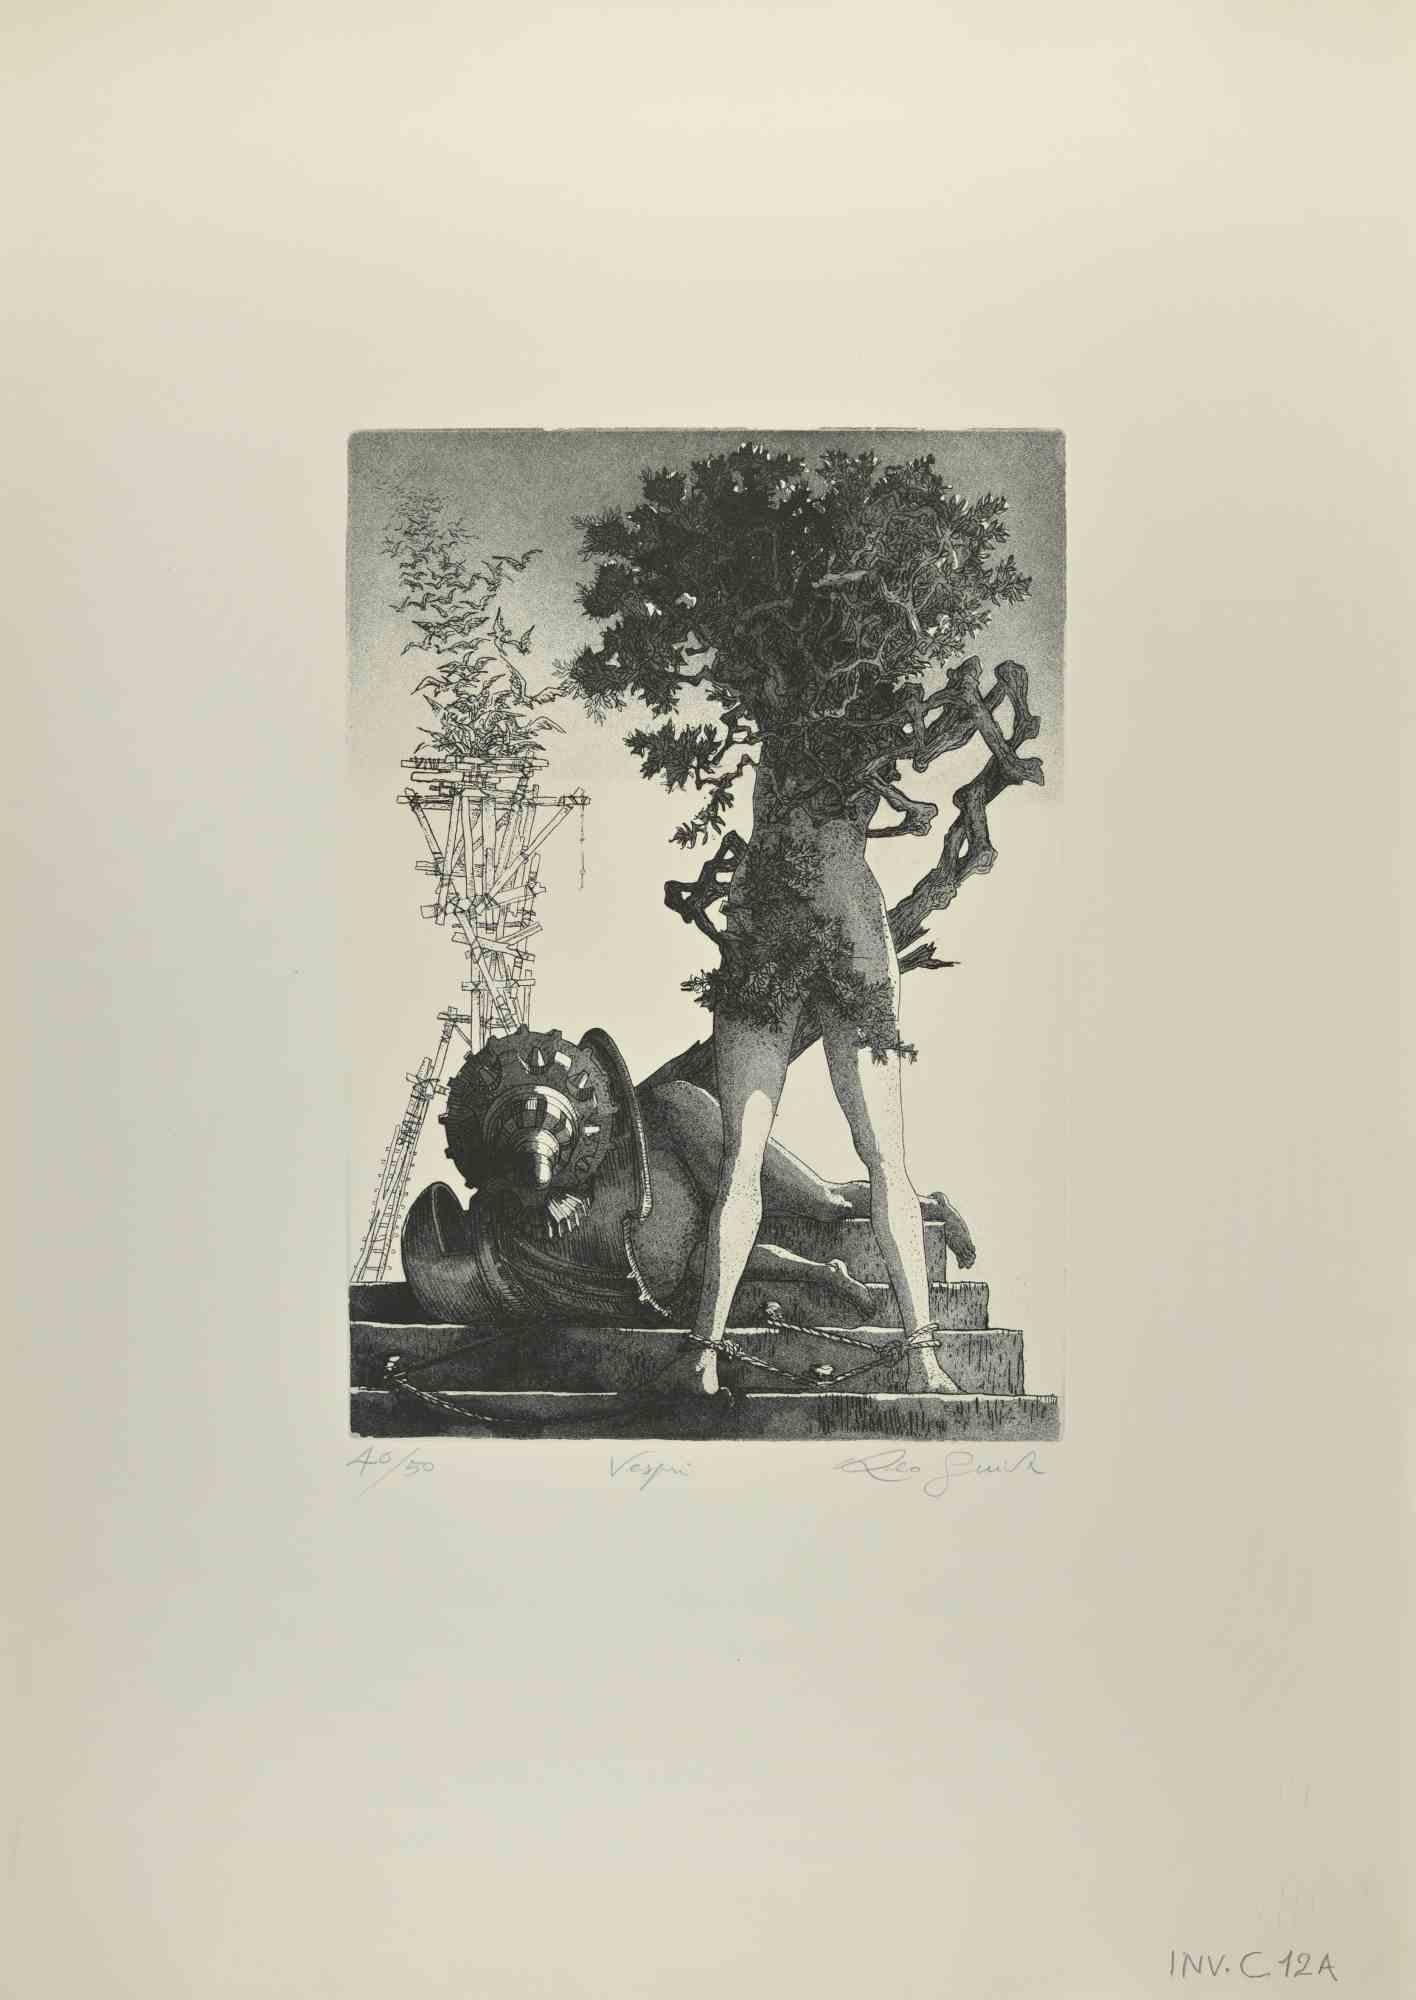 Frau-Baum ist eine Radierung von Leo Guida aus den 1970er Jahren.

Handsigniert vom Künstler mit Bleistift am unteren Rand, nummeriert, Auflage 40/50 Exemplare.

Guter Zustand.

Als Künstler, der ein Gespür für aktuelle Themen, künstlerische